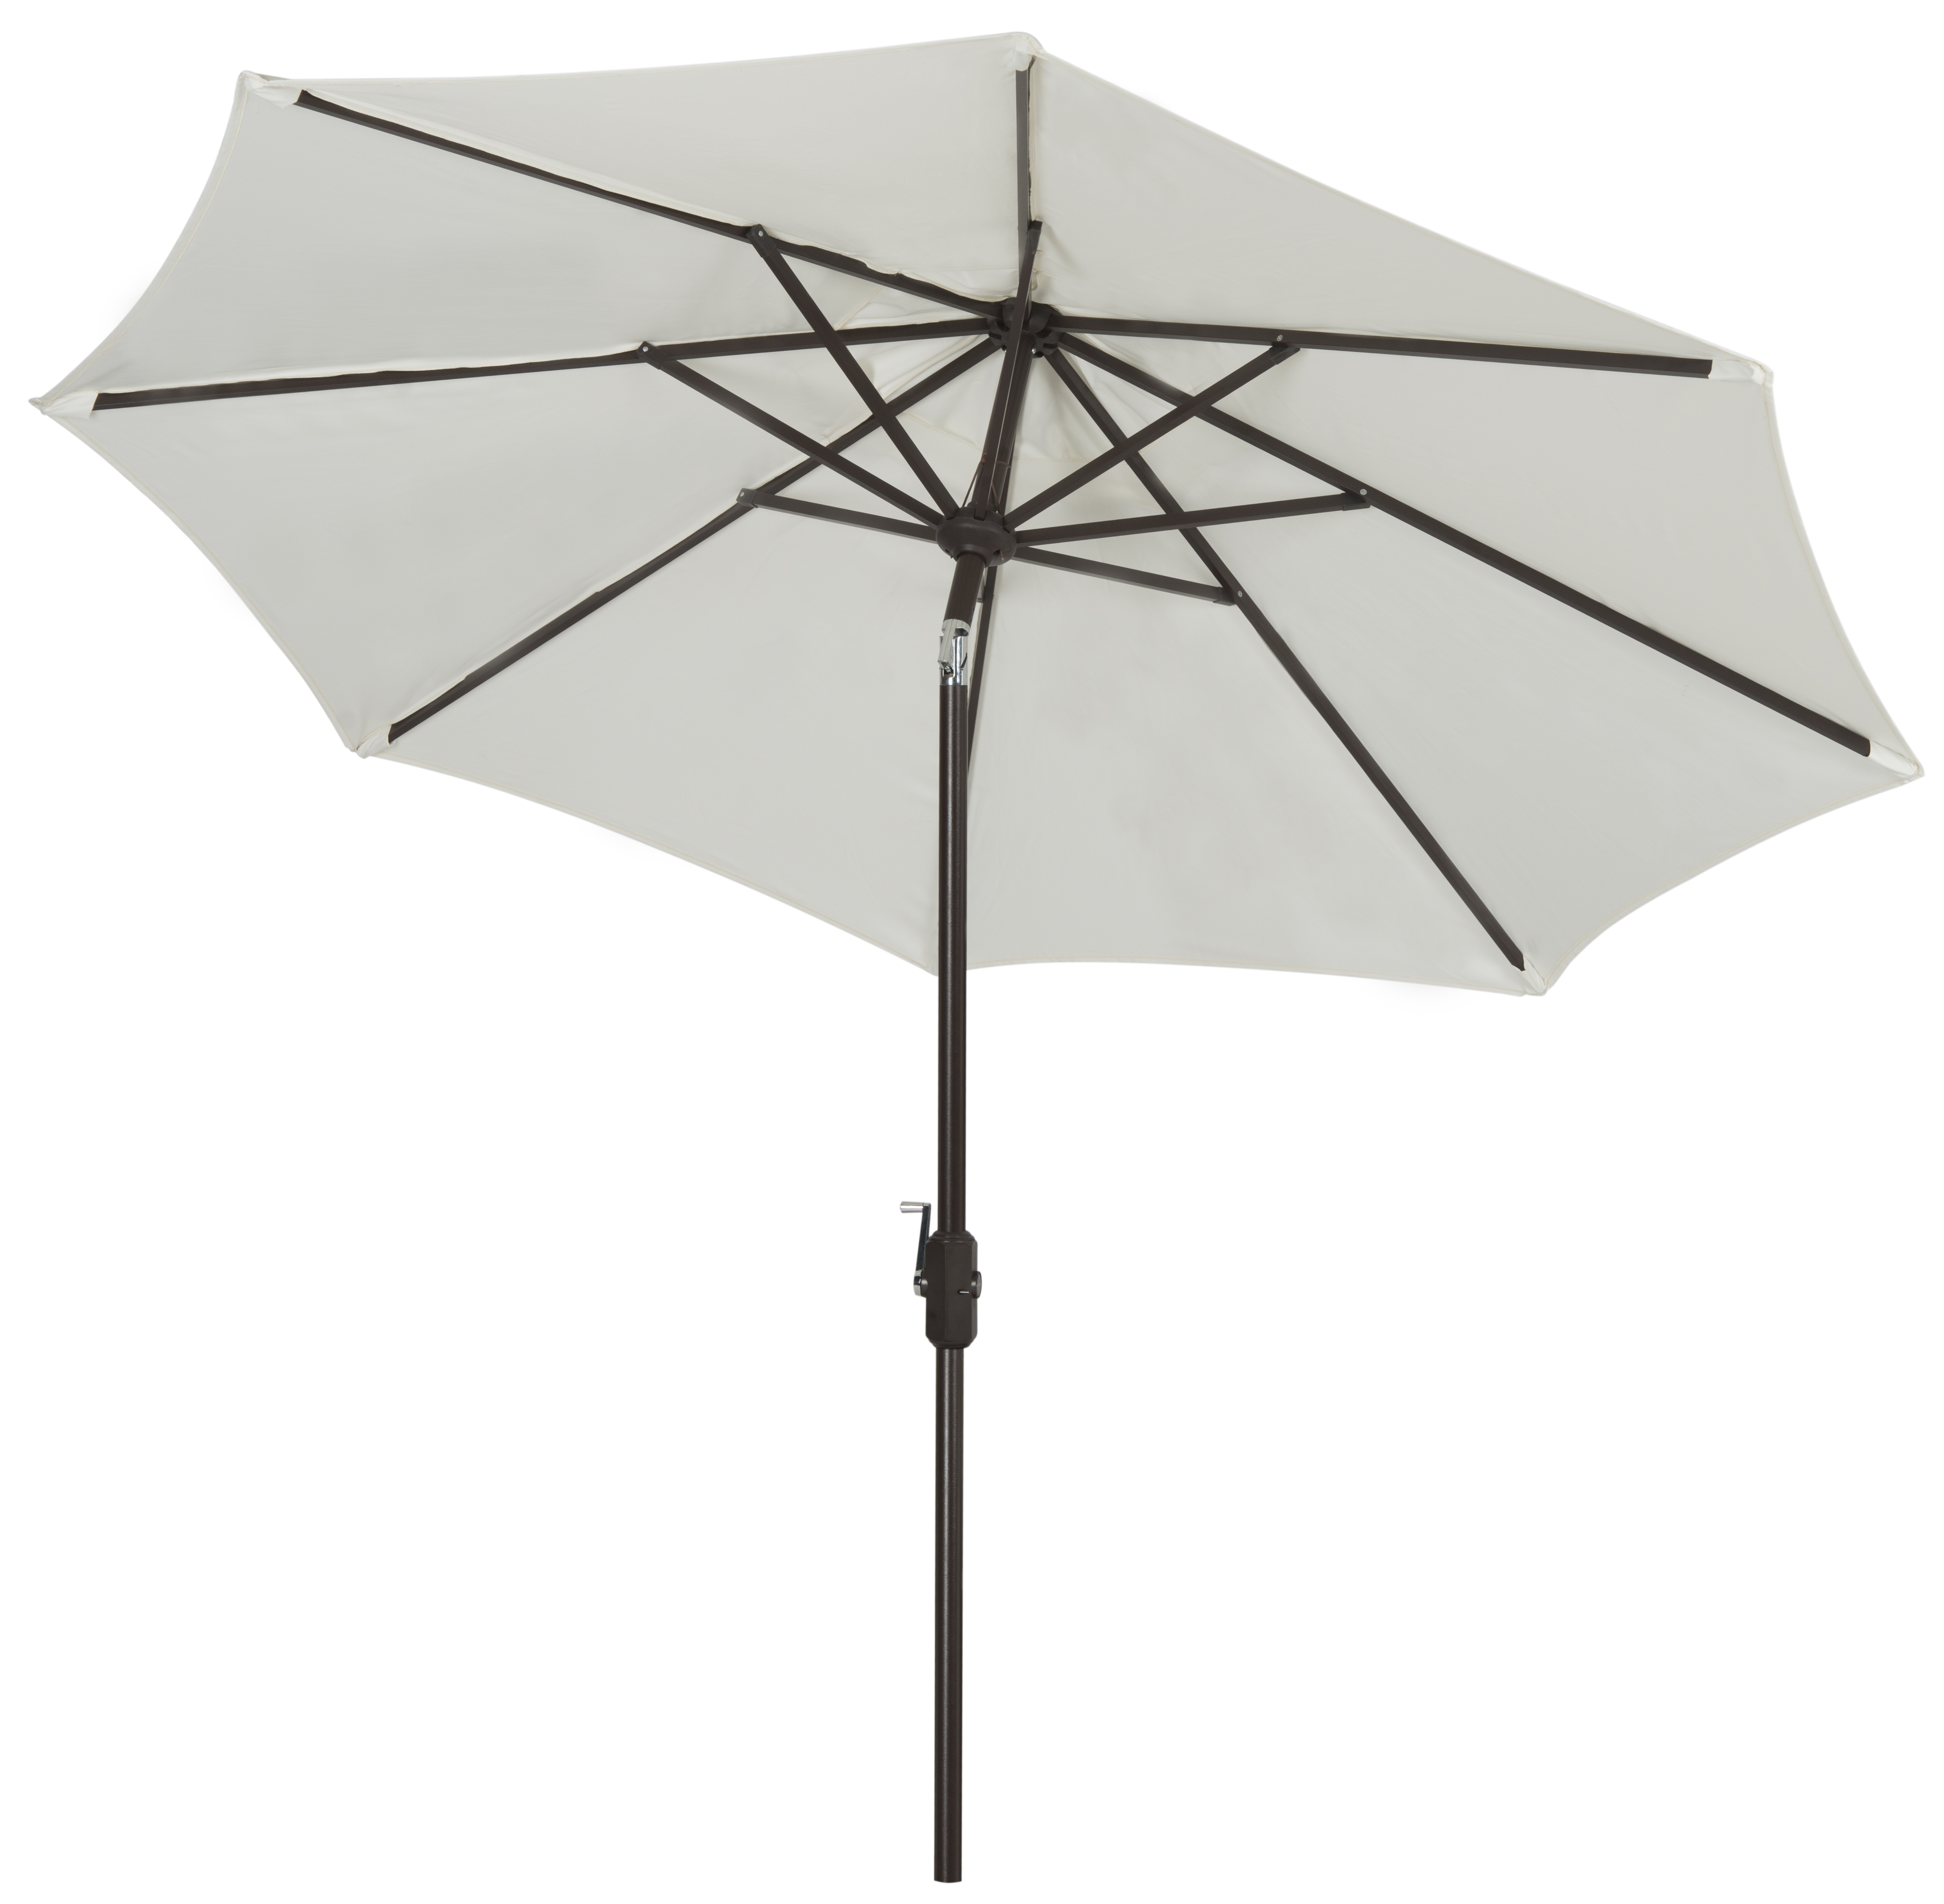 Uv Resistant Ortega 9 Ft Auto Tilt Crank Umbrella - Natural - Arlo Home - Image 1